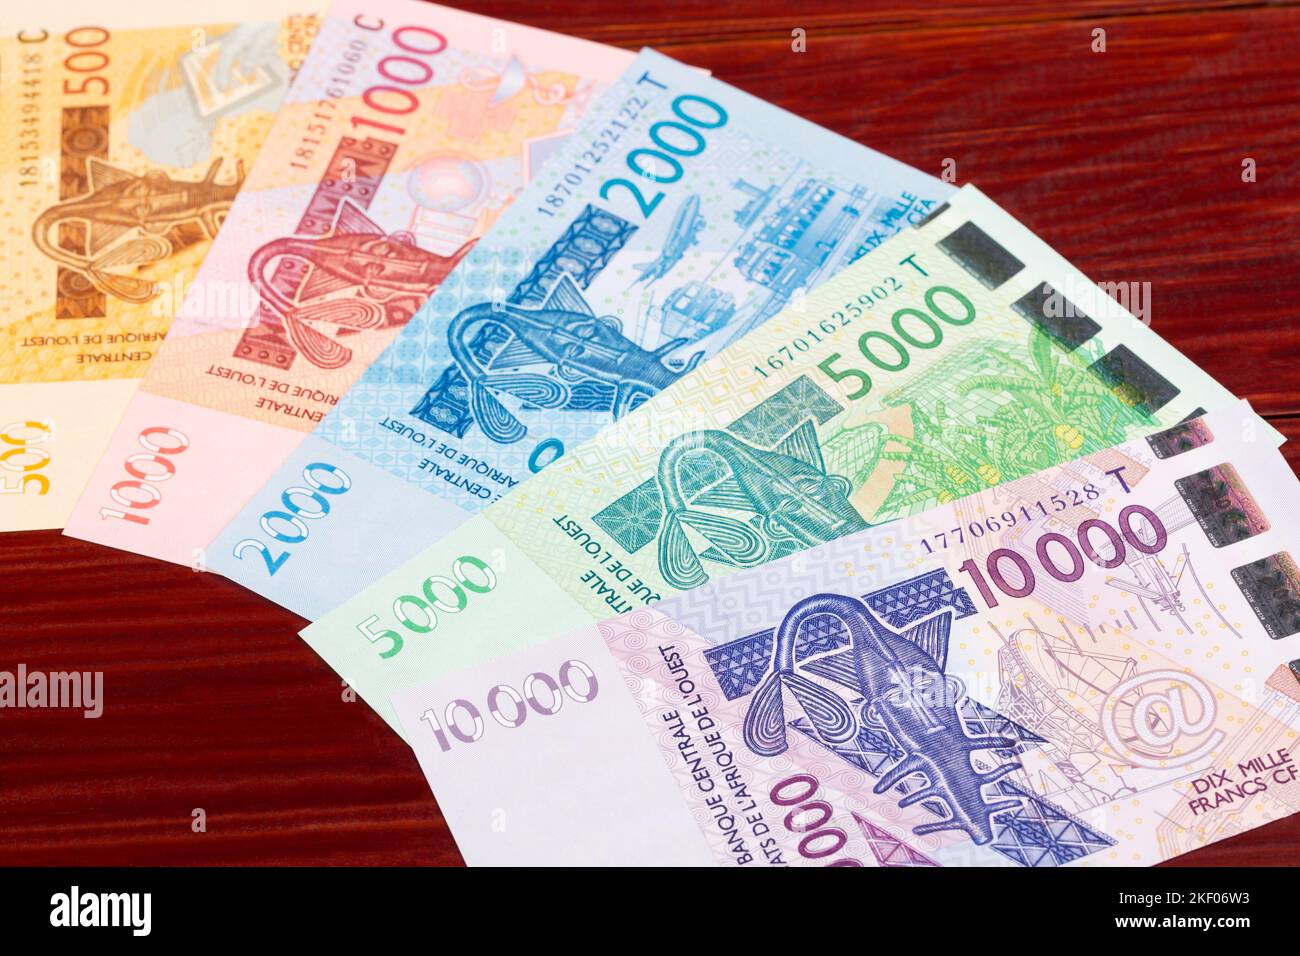 Geld der westafrikanischen Staaten - Franc ein geschäftlicher Hintergrund Stockfoto